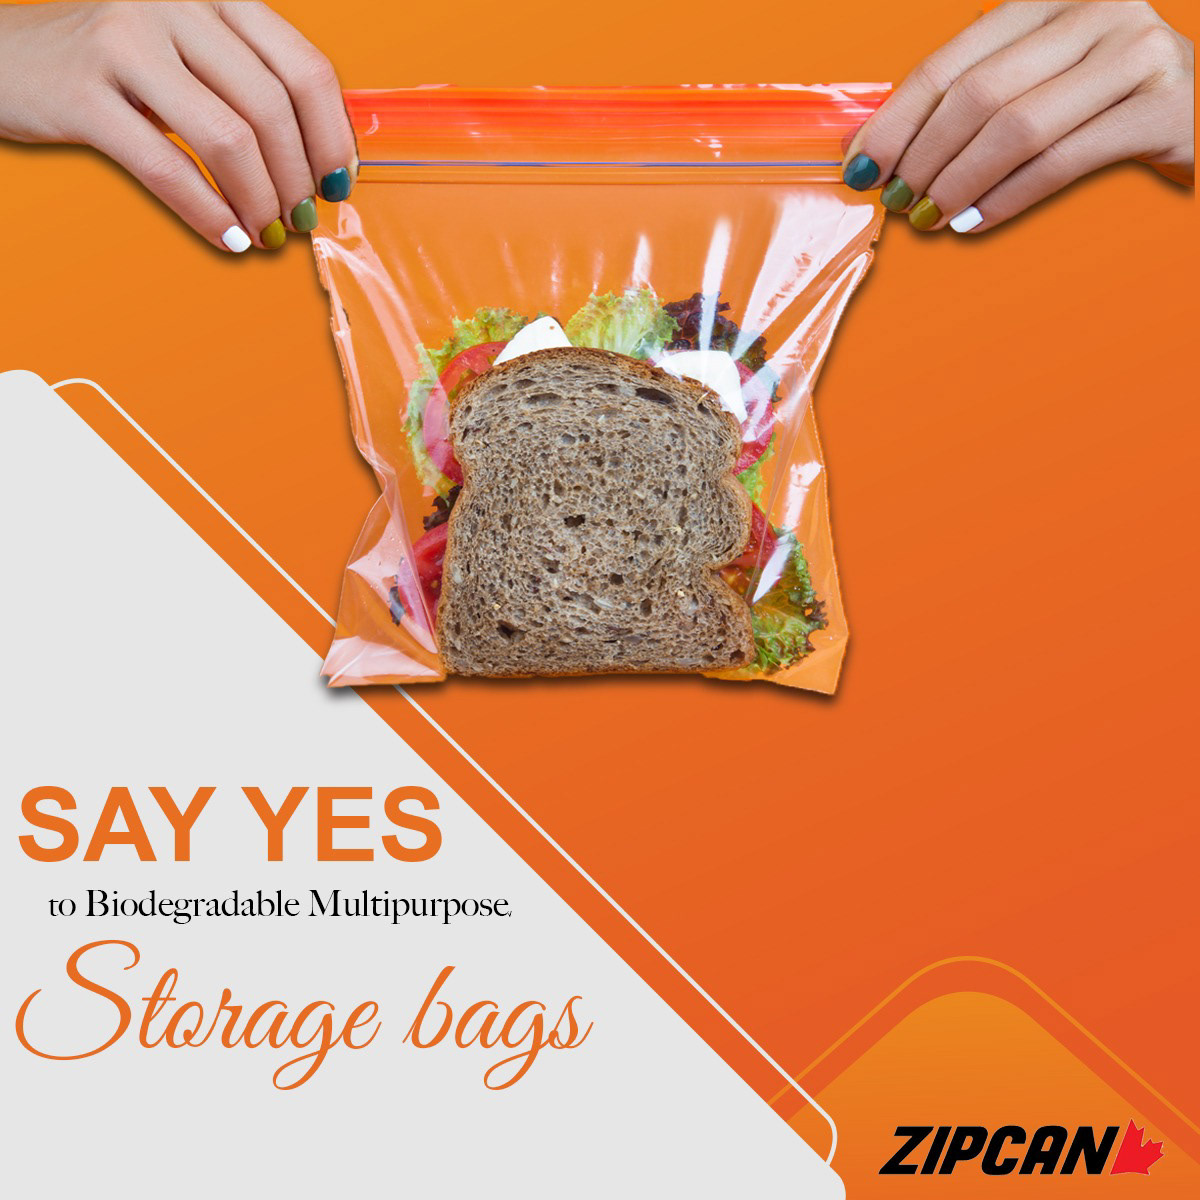 freezer bag plastic bags sandwich bags Zipcan Zipcan Storage bags Ziploc